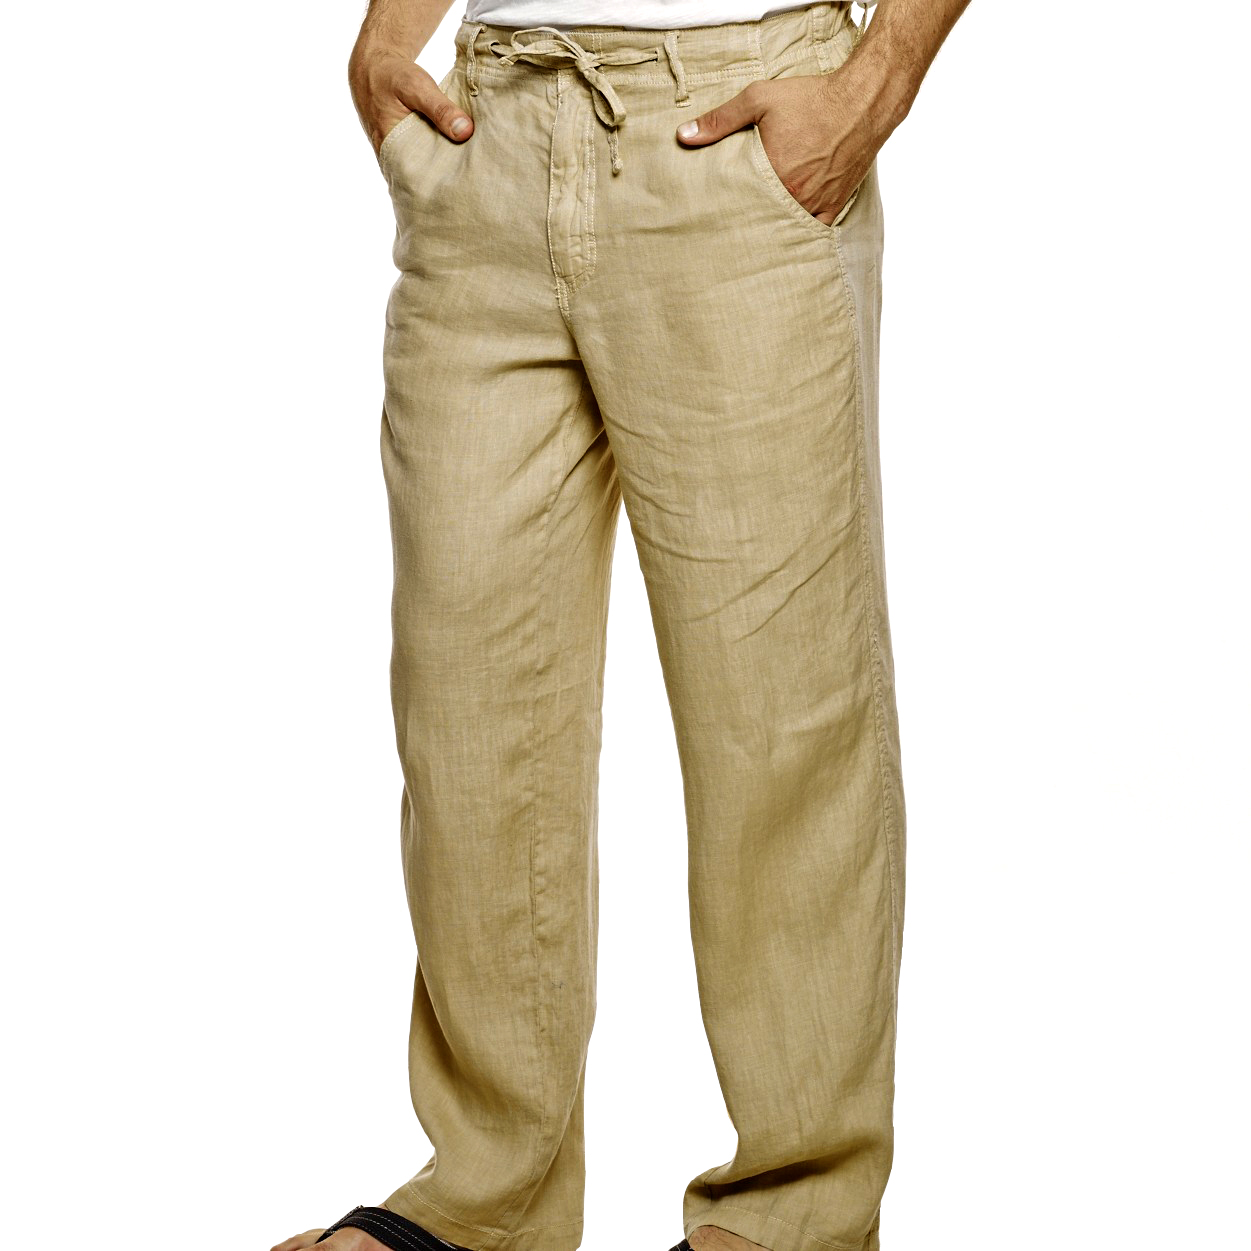 Купить штаны мужские большого размера. Льняные брюки мужские campus78. Мужские льняные брюки Monsoon. Оджи льняные брюки мужские. Мужчина в льняных брюках.